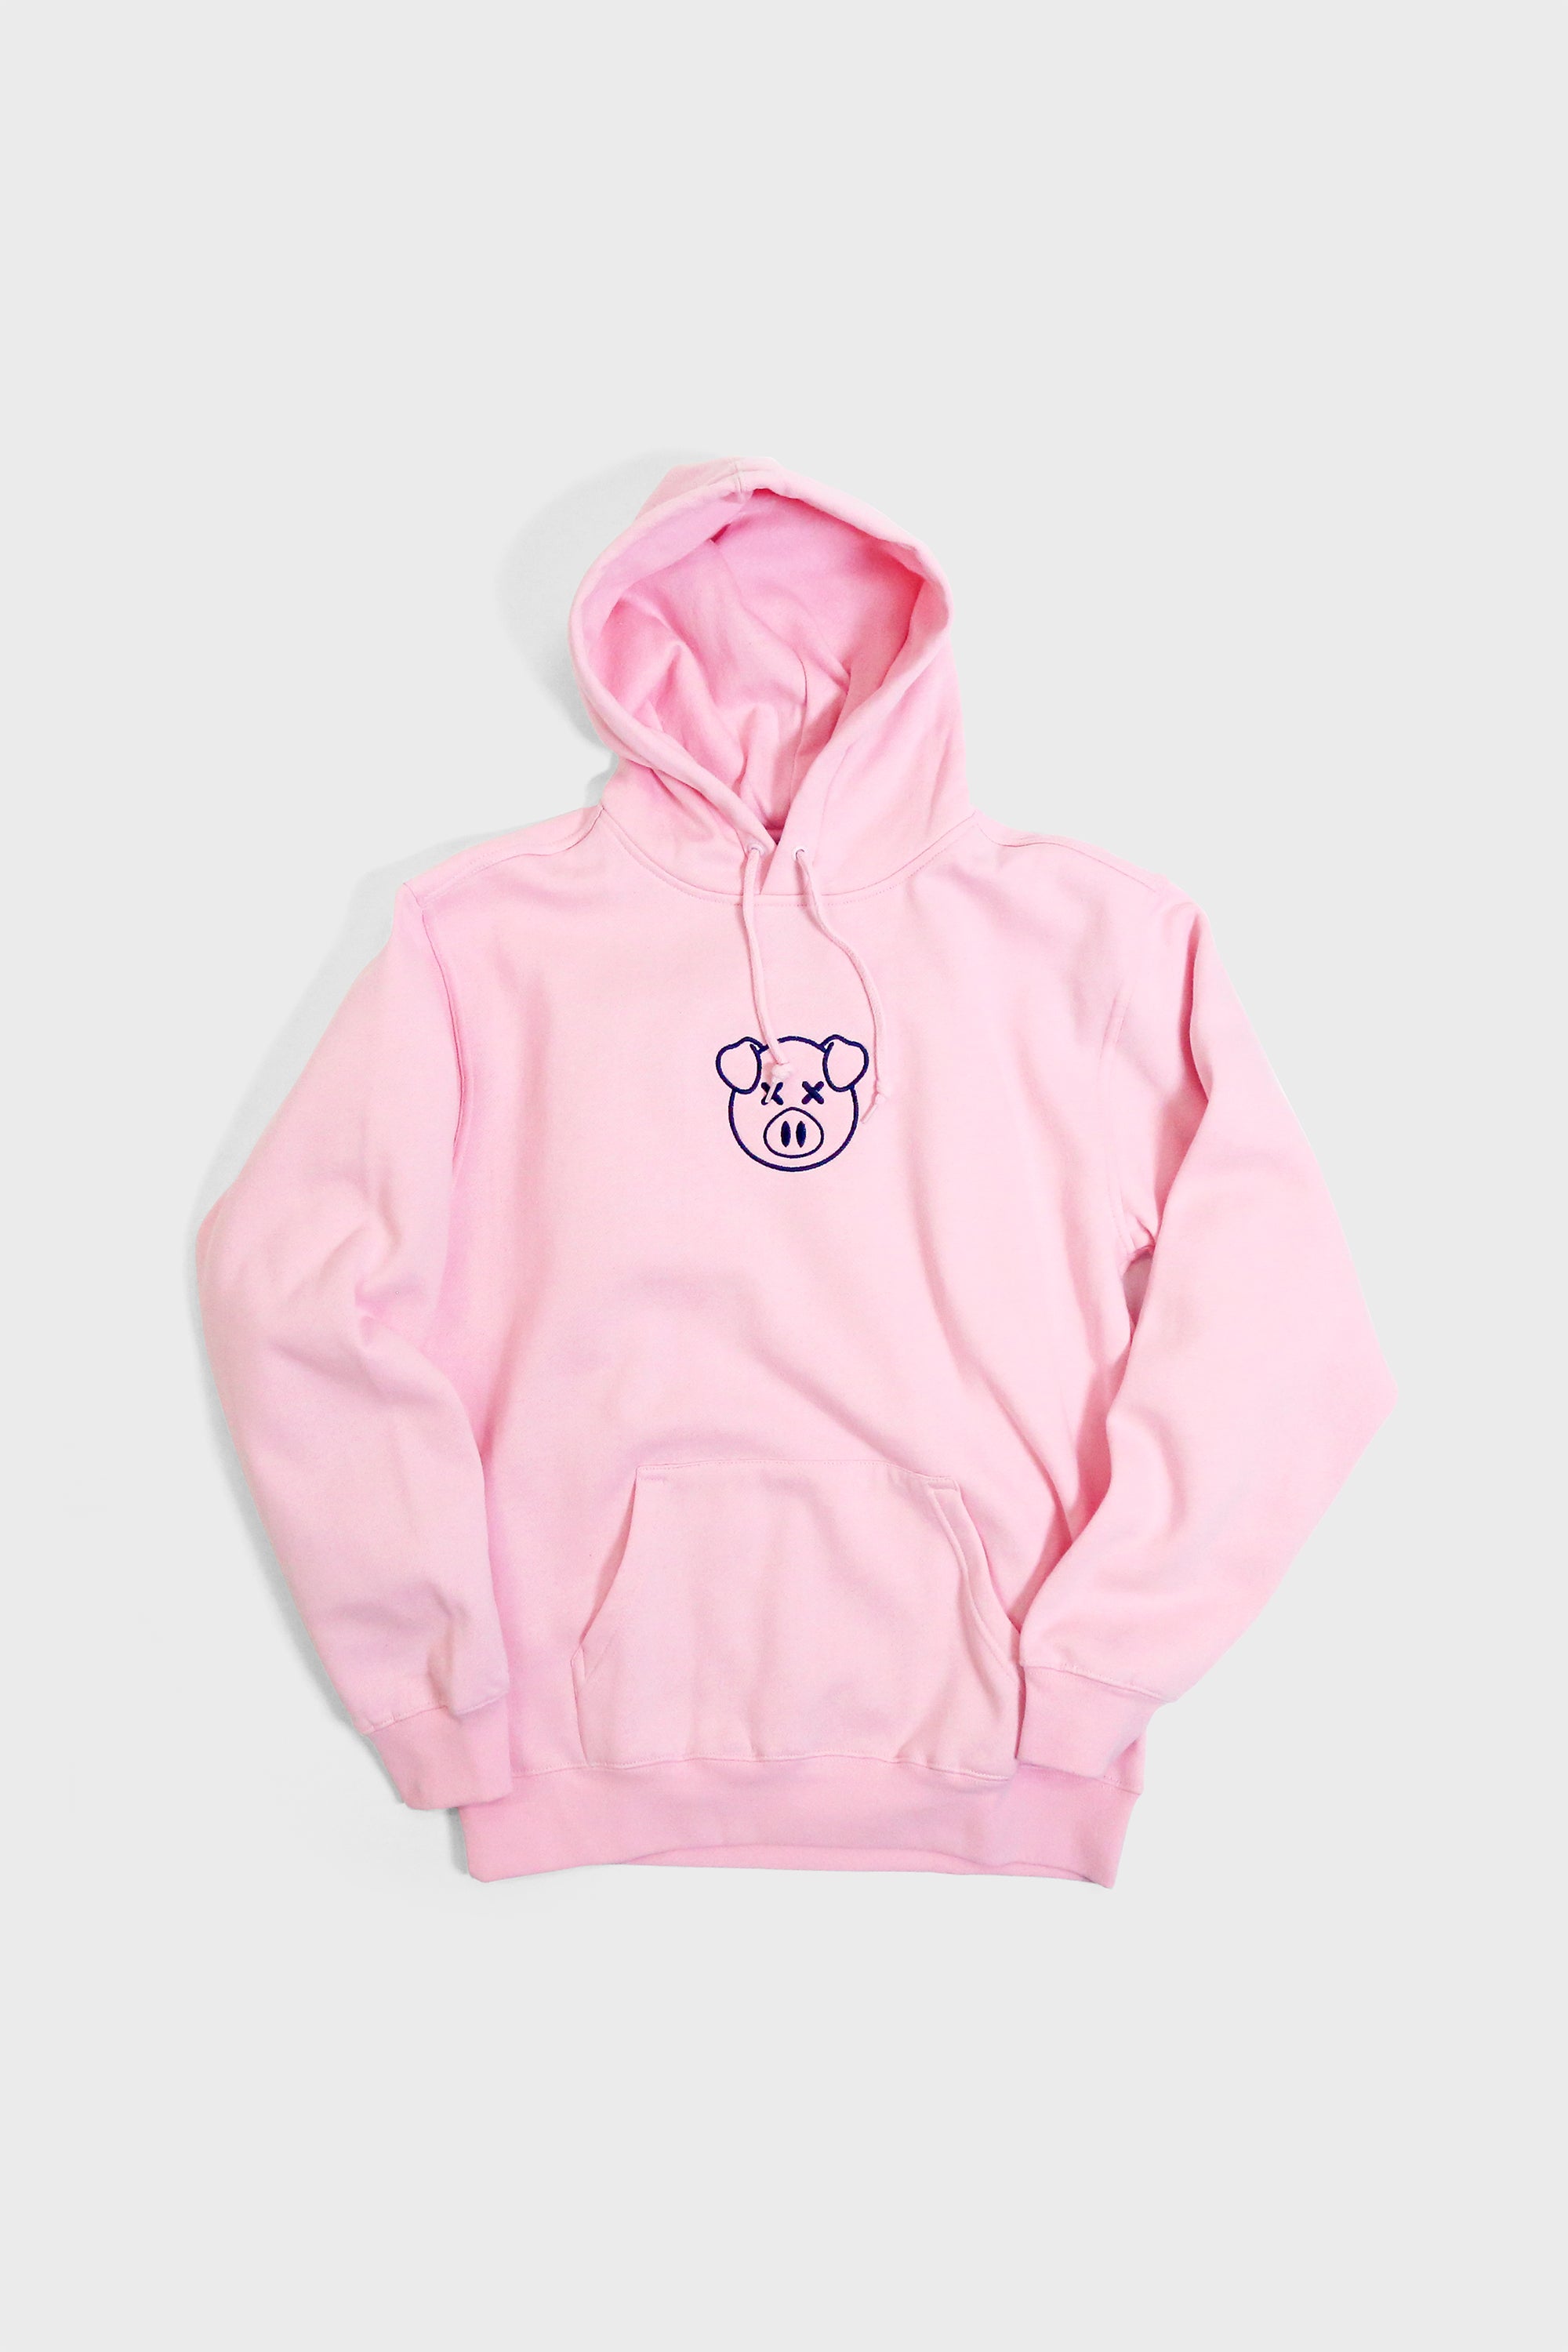 animal roadie hoodie